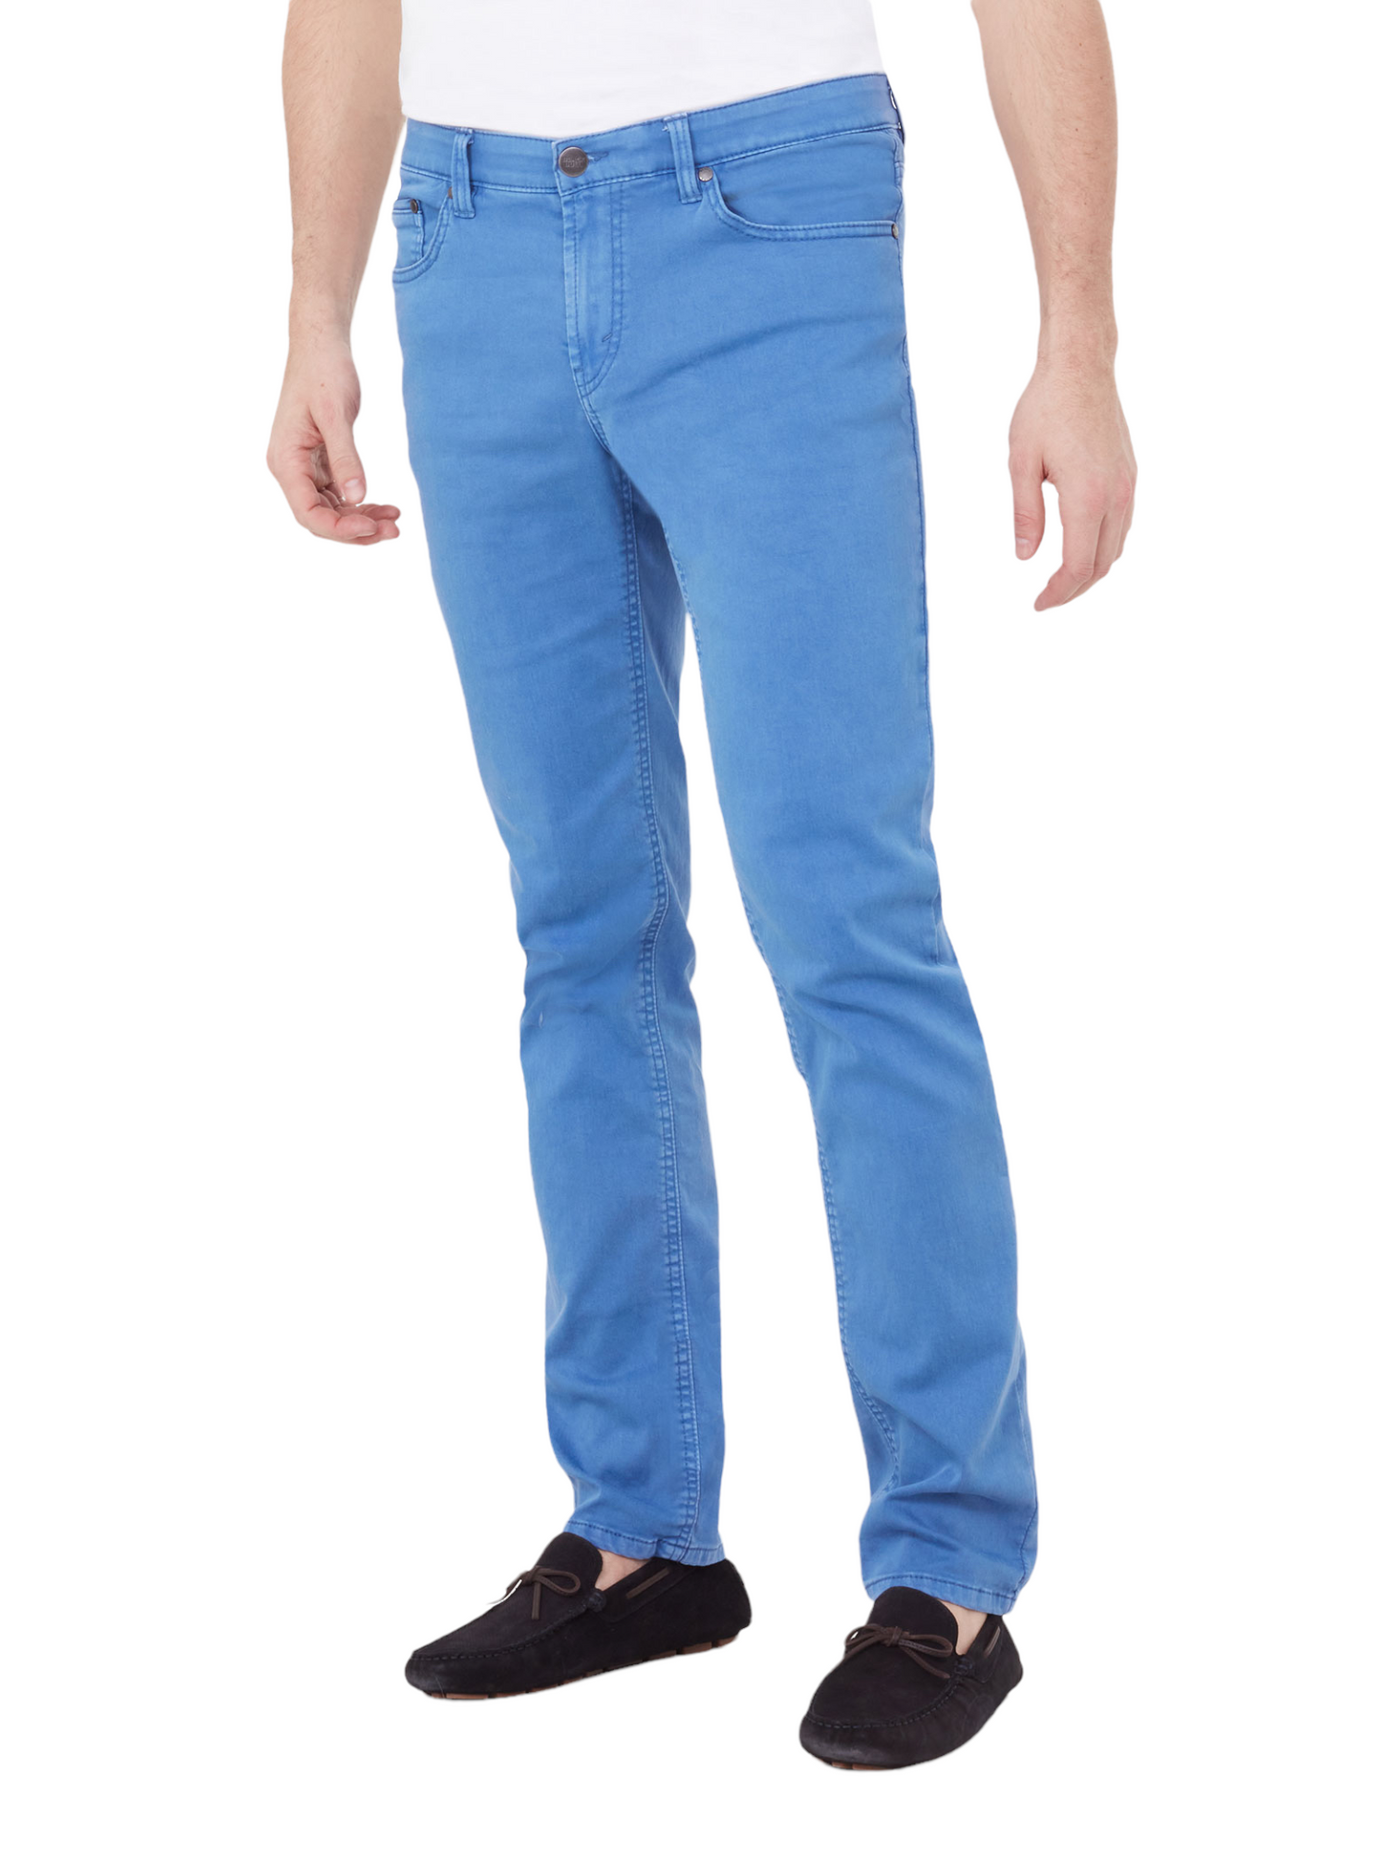 Pantalon de coton extensible bleu coupe semi-ajustée